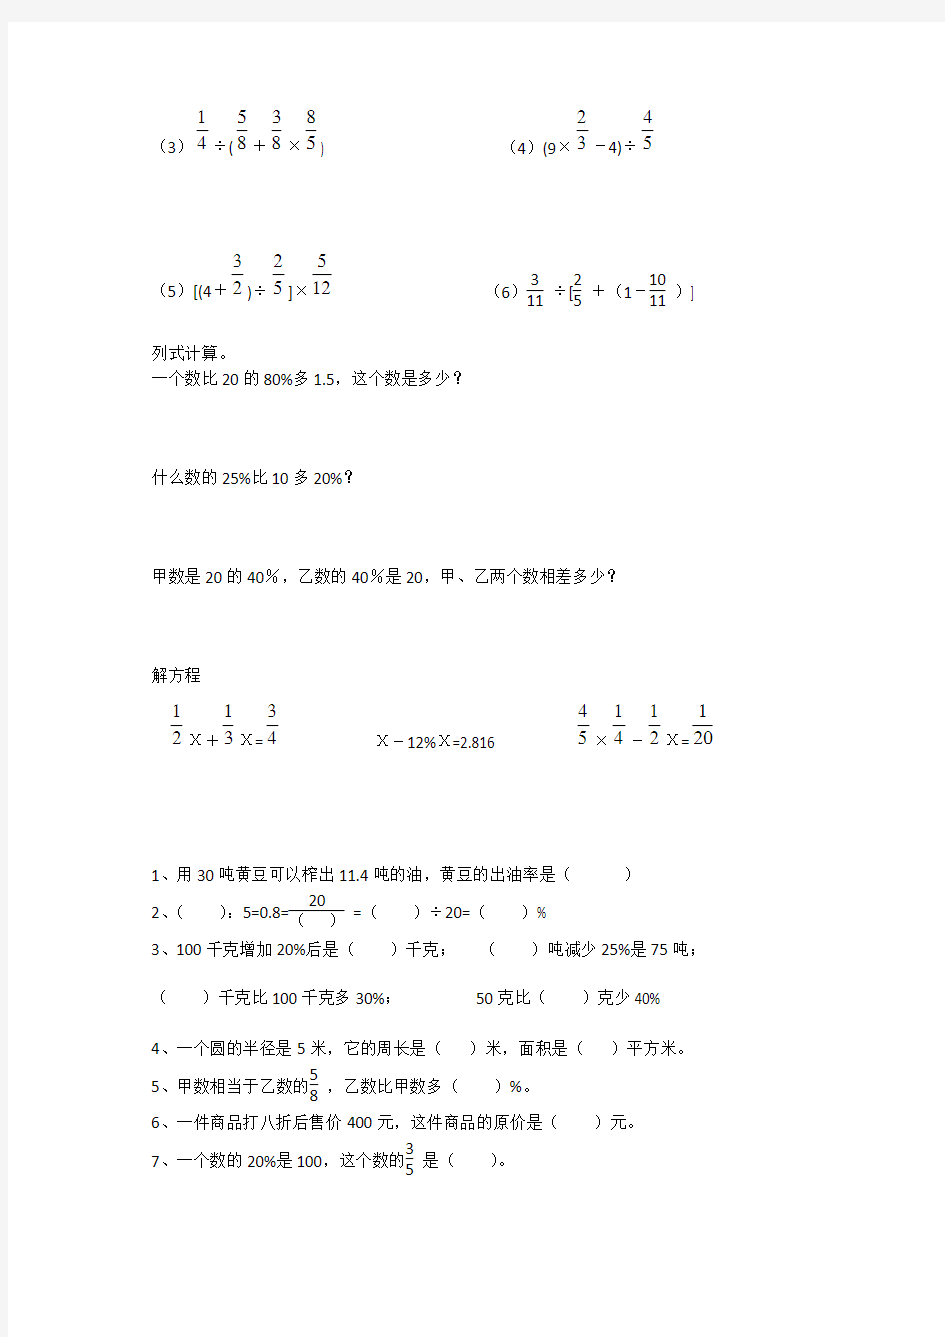 苏教版小升初数学专项练习-填空、计算题(新审定)